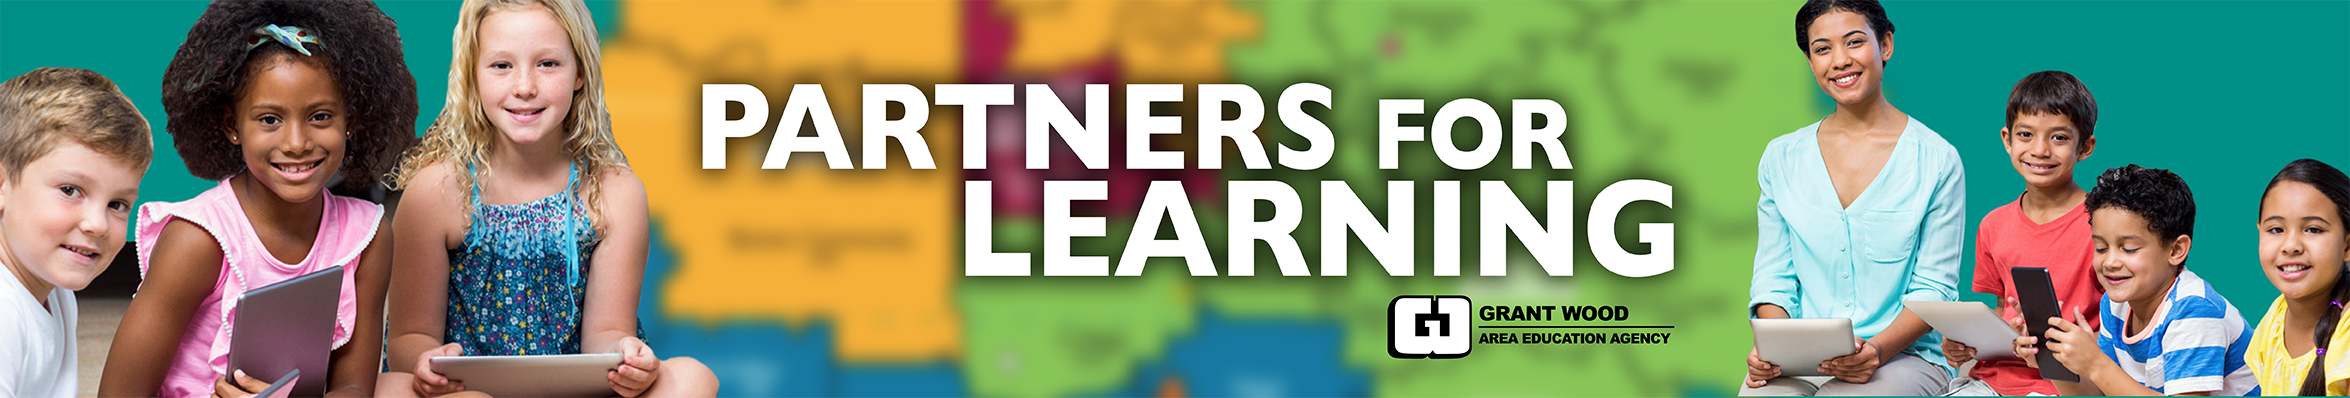 Partners for Learning Social Banner 1